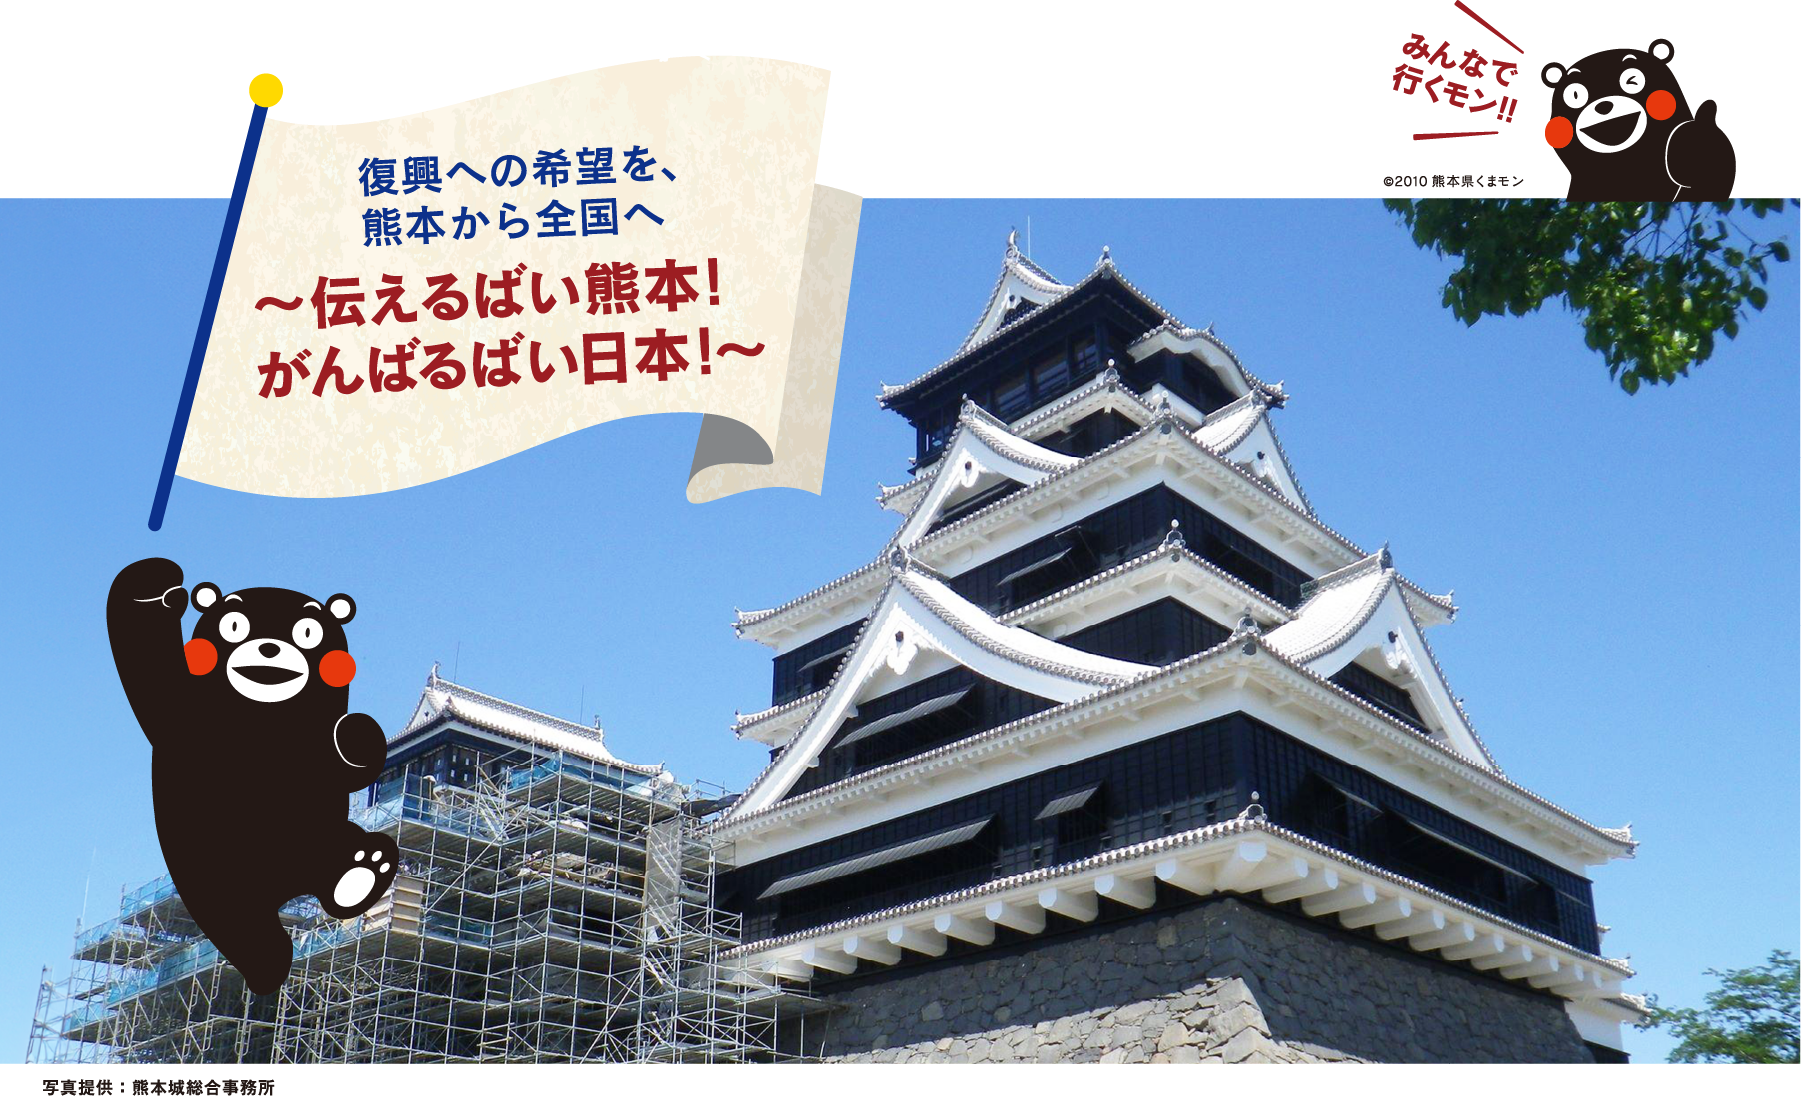 復興への希望を、
熊本から全国へ ～伝えるばい熊本！がんばるばい日本！～「みんなで行くモン!!」写真提供：熊本城総合事務所